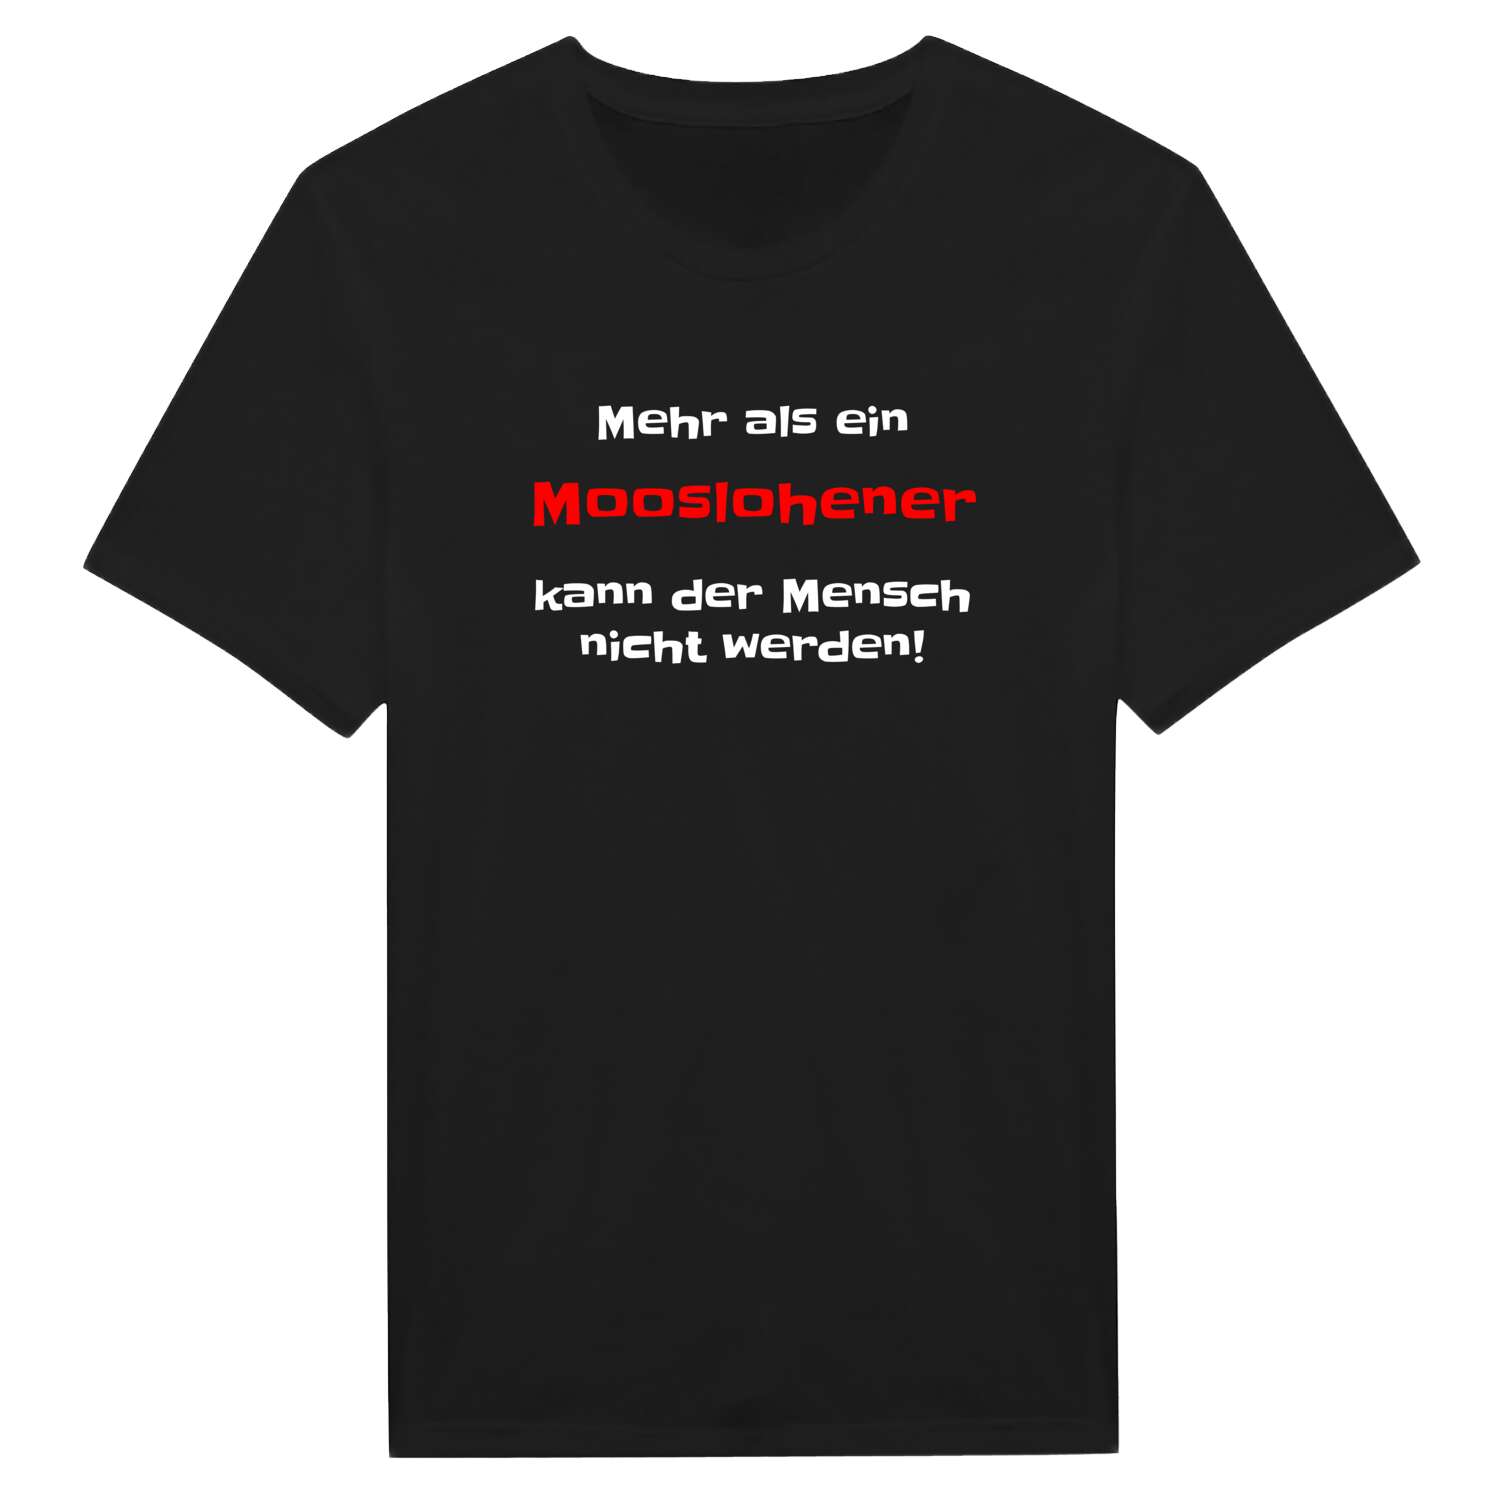 Mooslohe T-Shirt »Mehr als ein«